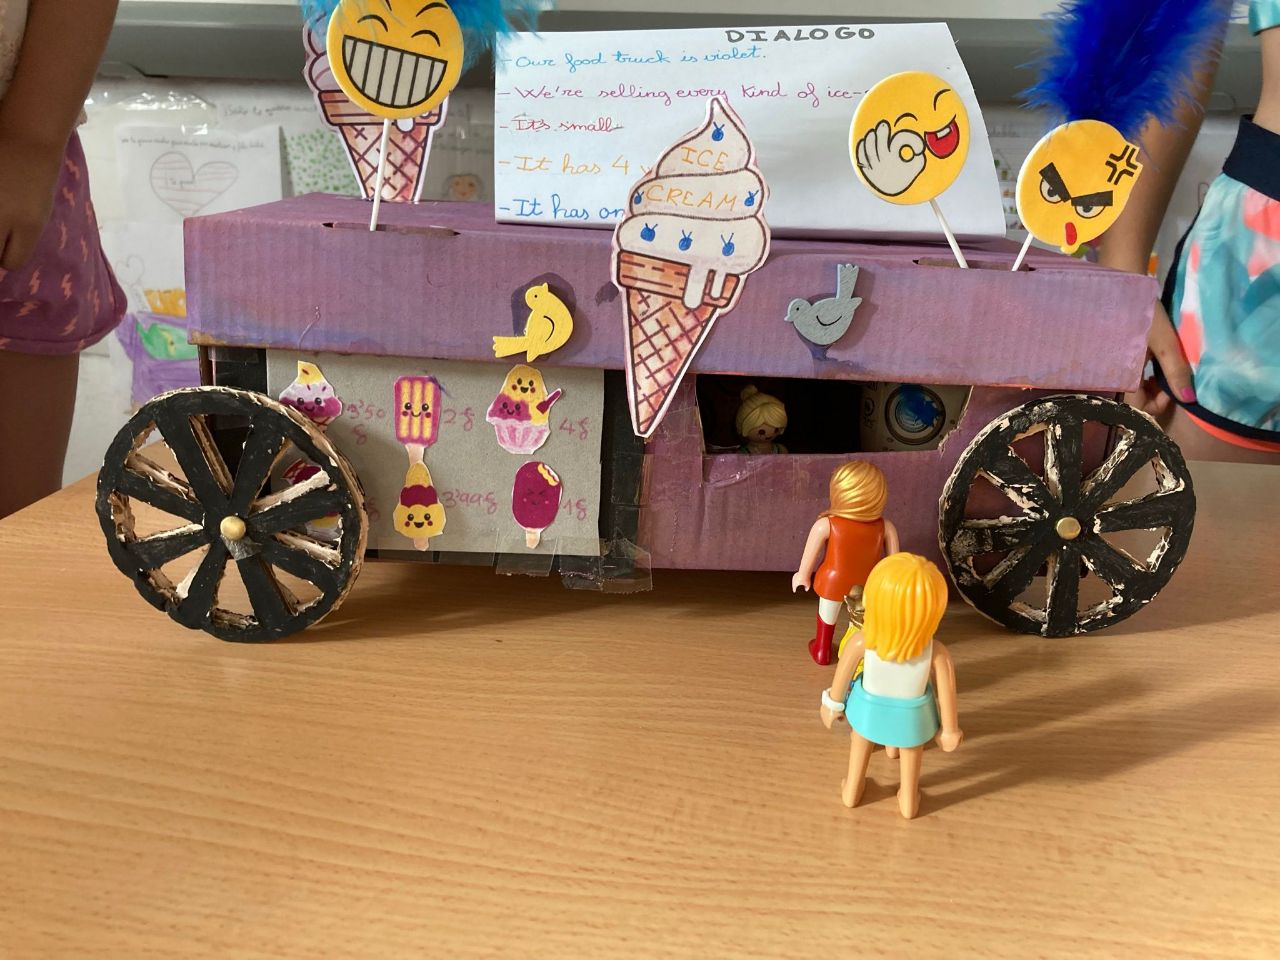 En la imagen se puede ver una camioneta que vende helados hecha con materiales reciclado hecha por niños donde se ven dos playmobils comprando